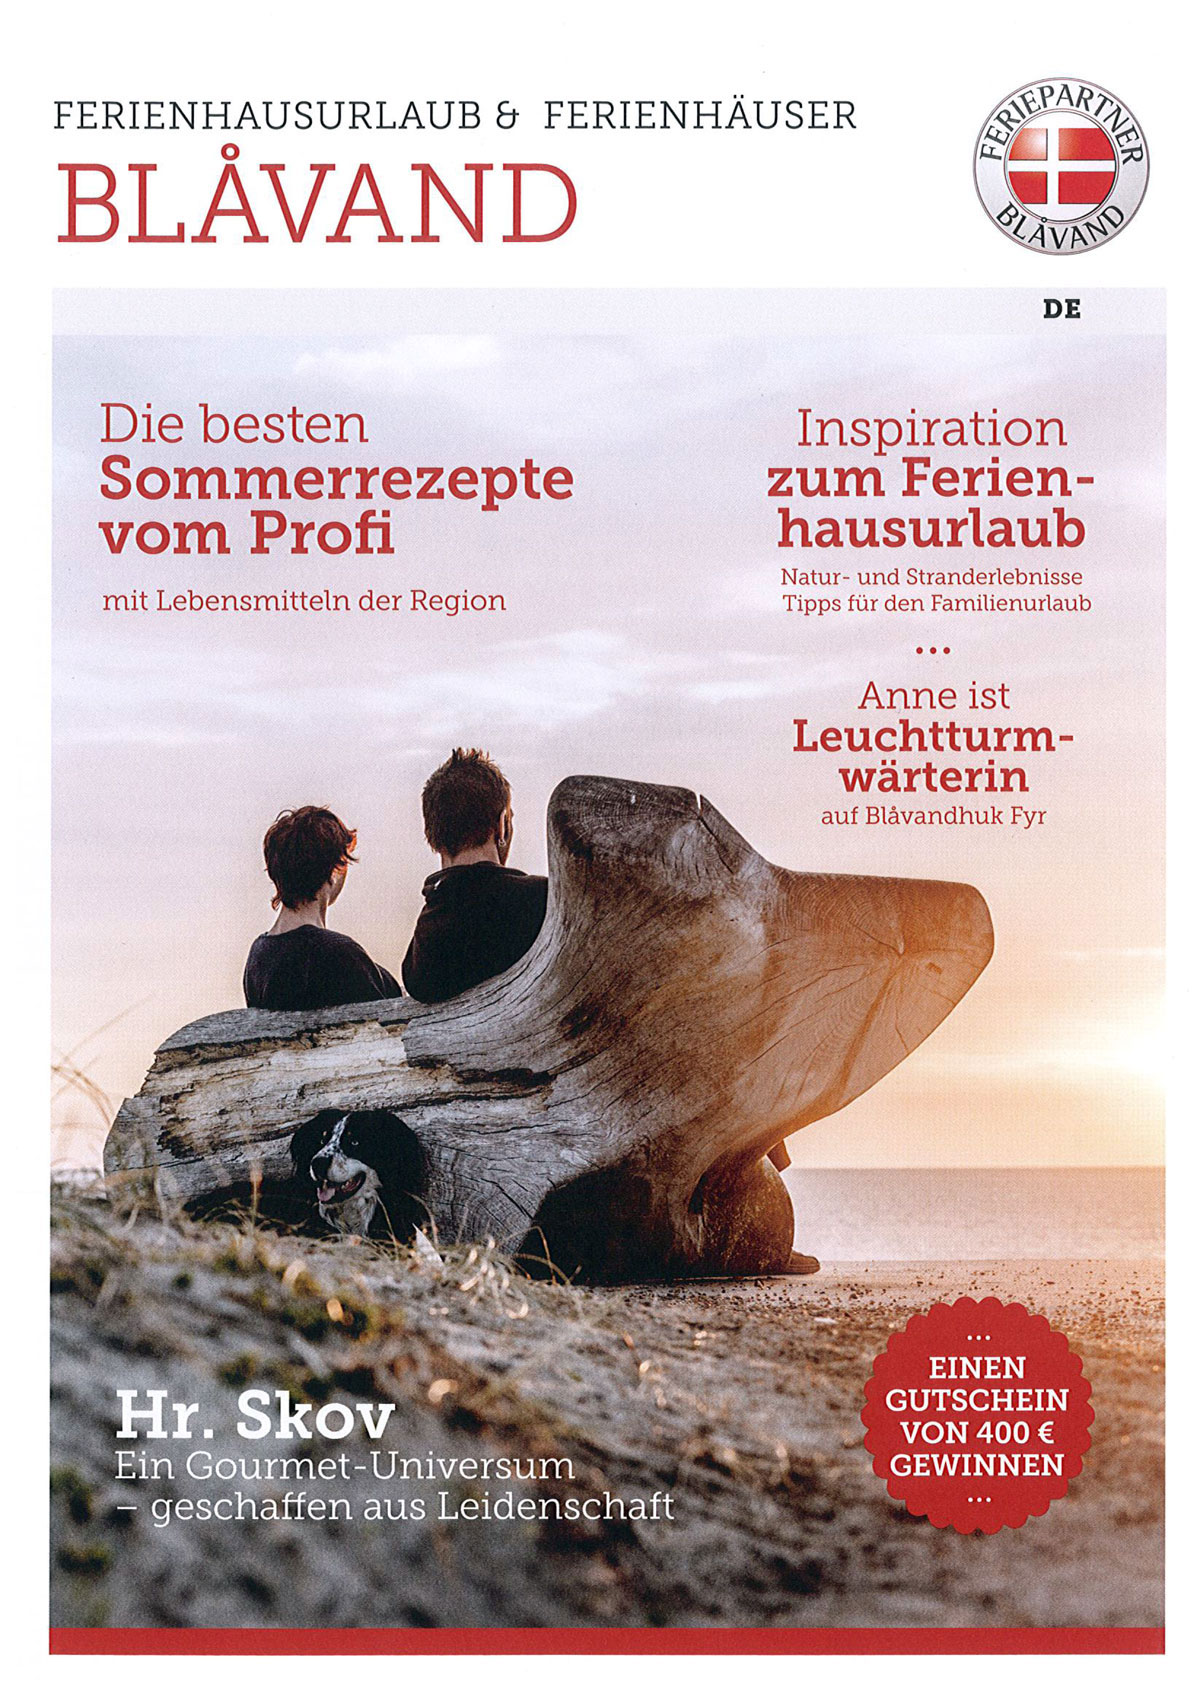 Ferienhausmagazin von Feriepartner Blåvand